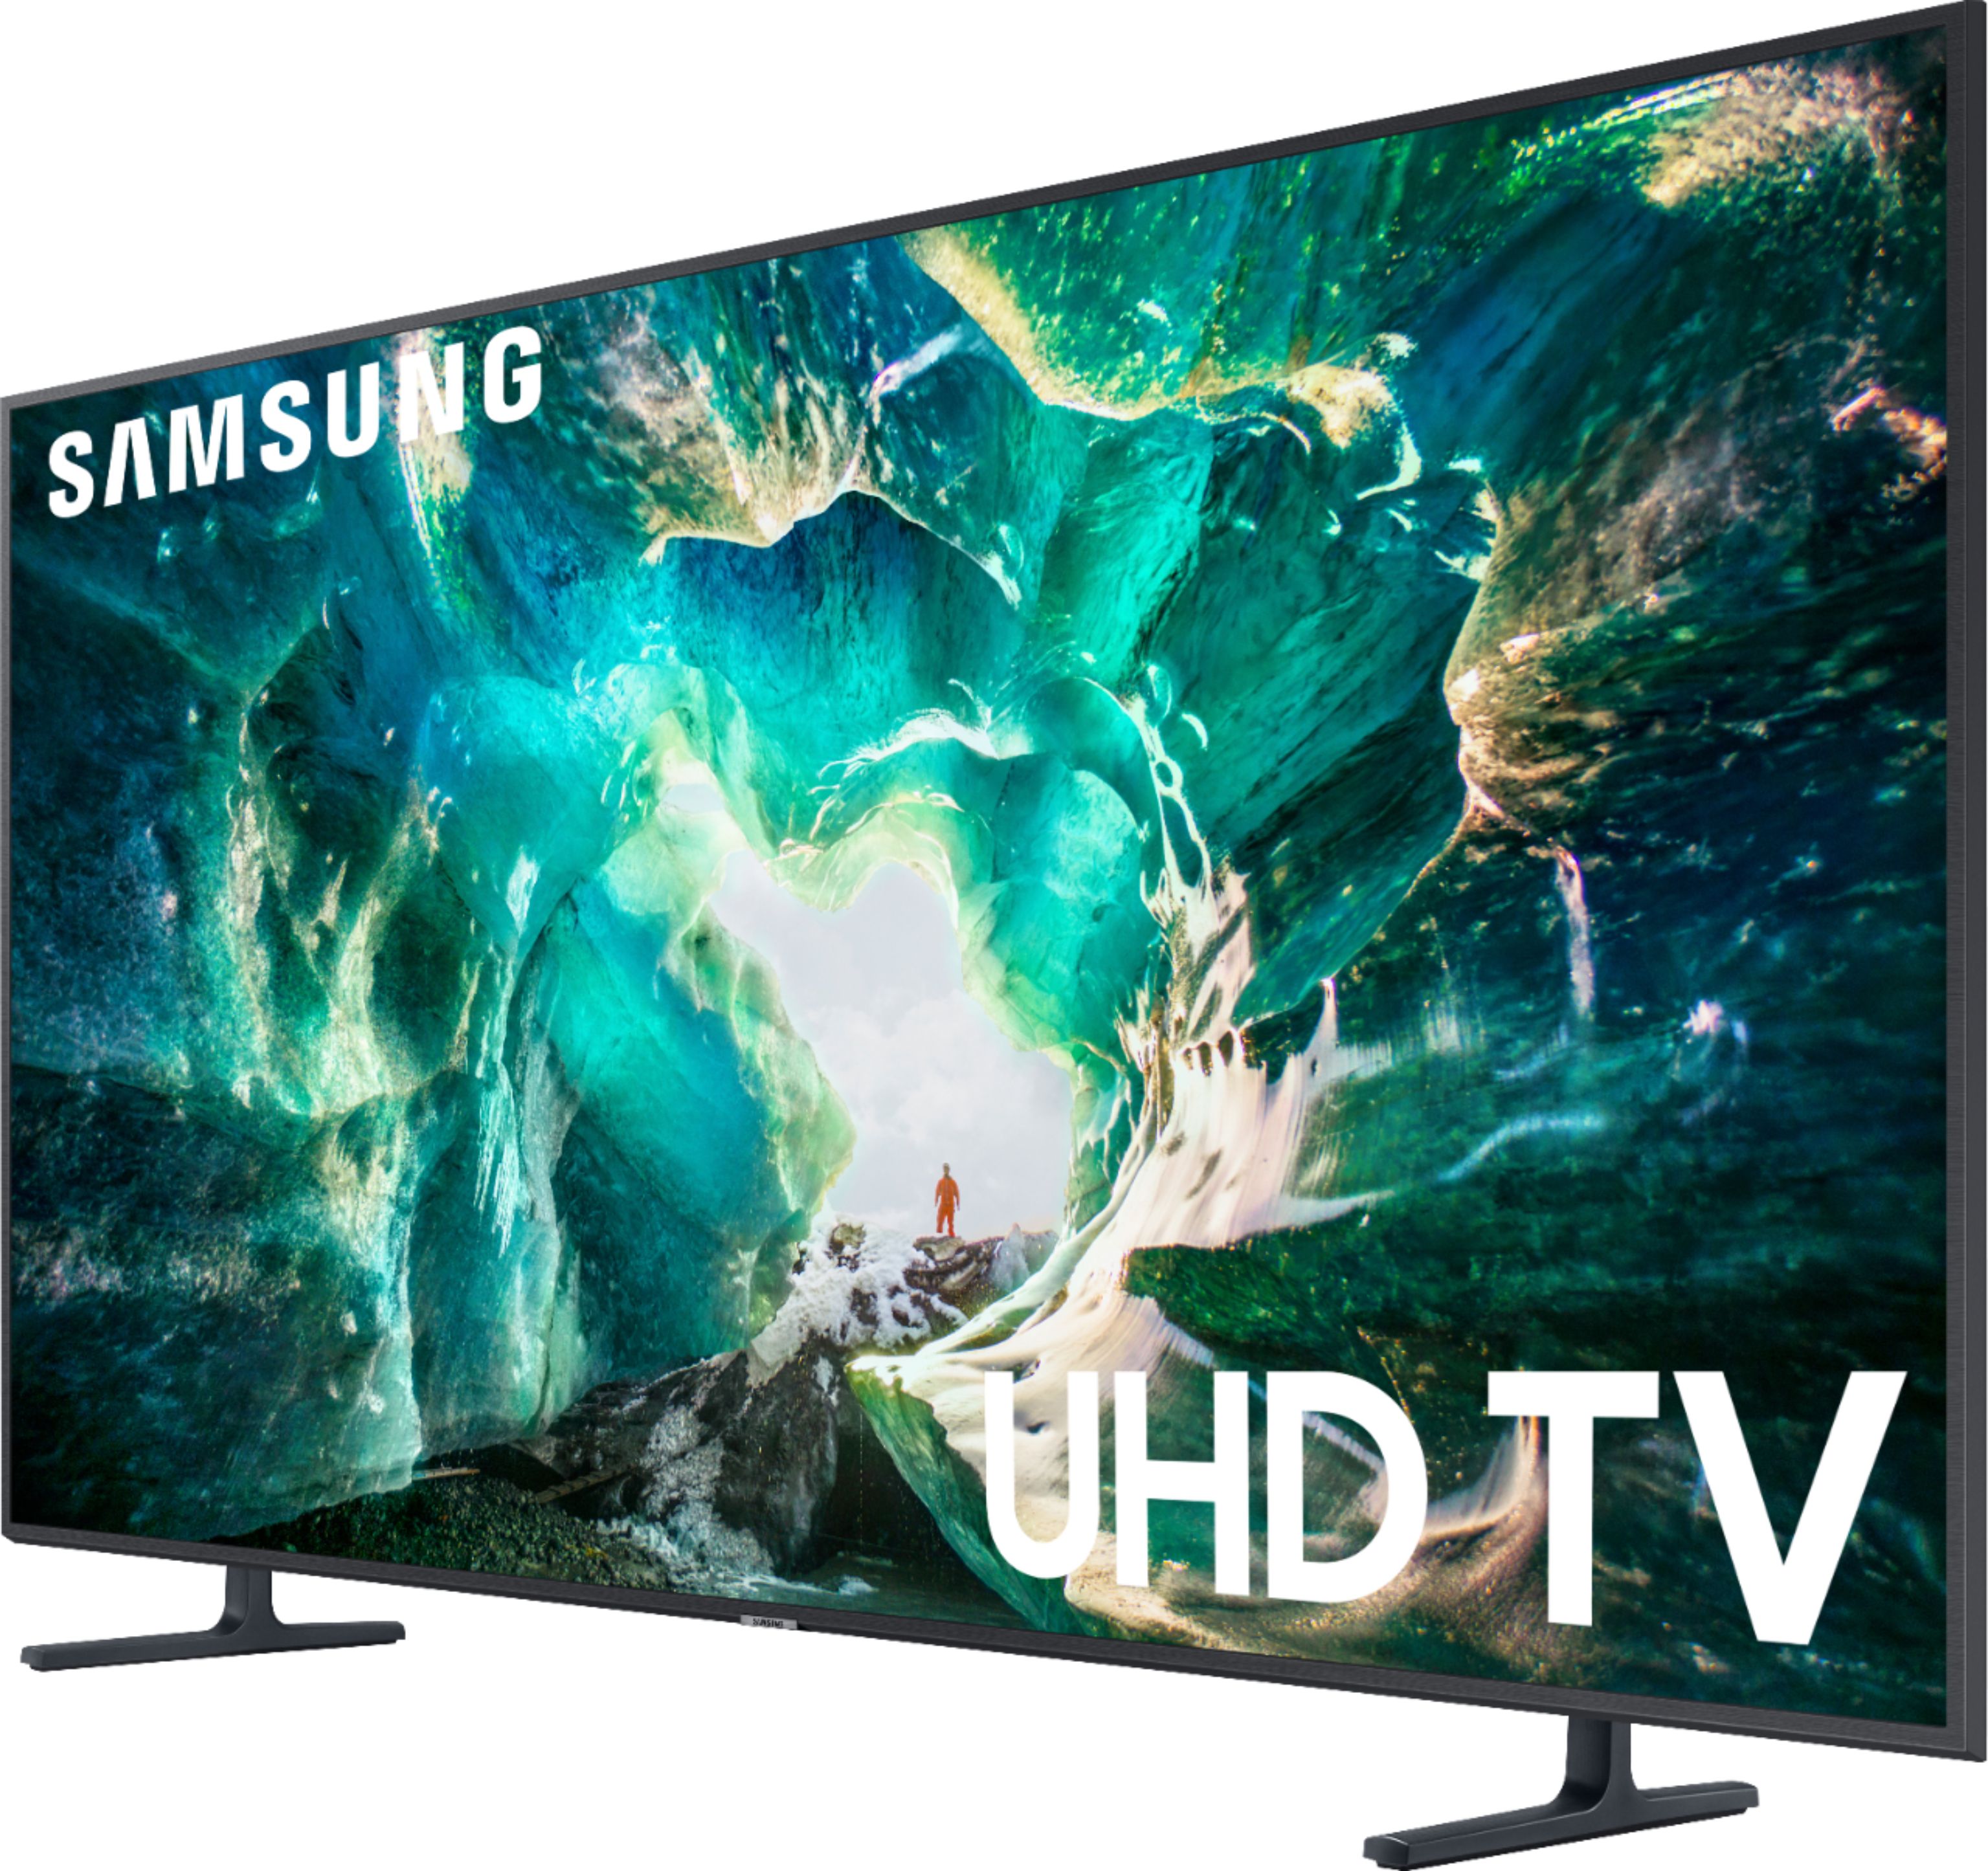 Left View: Samsung - 82" Class 8 Series LED 4K UHD Smart Tizen TV